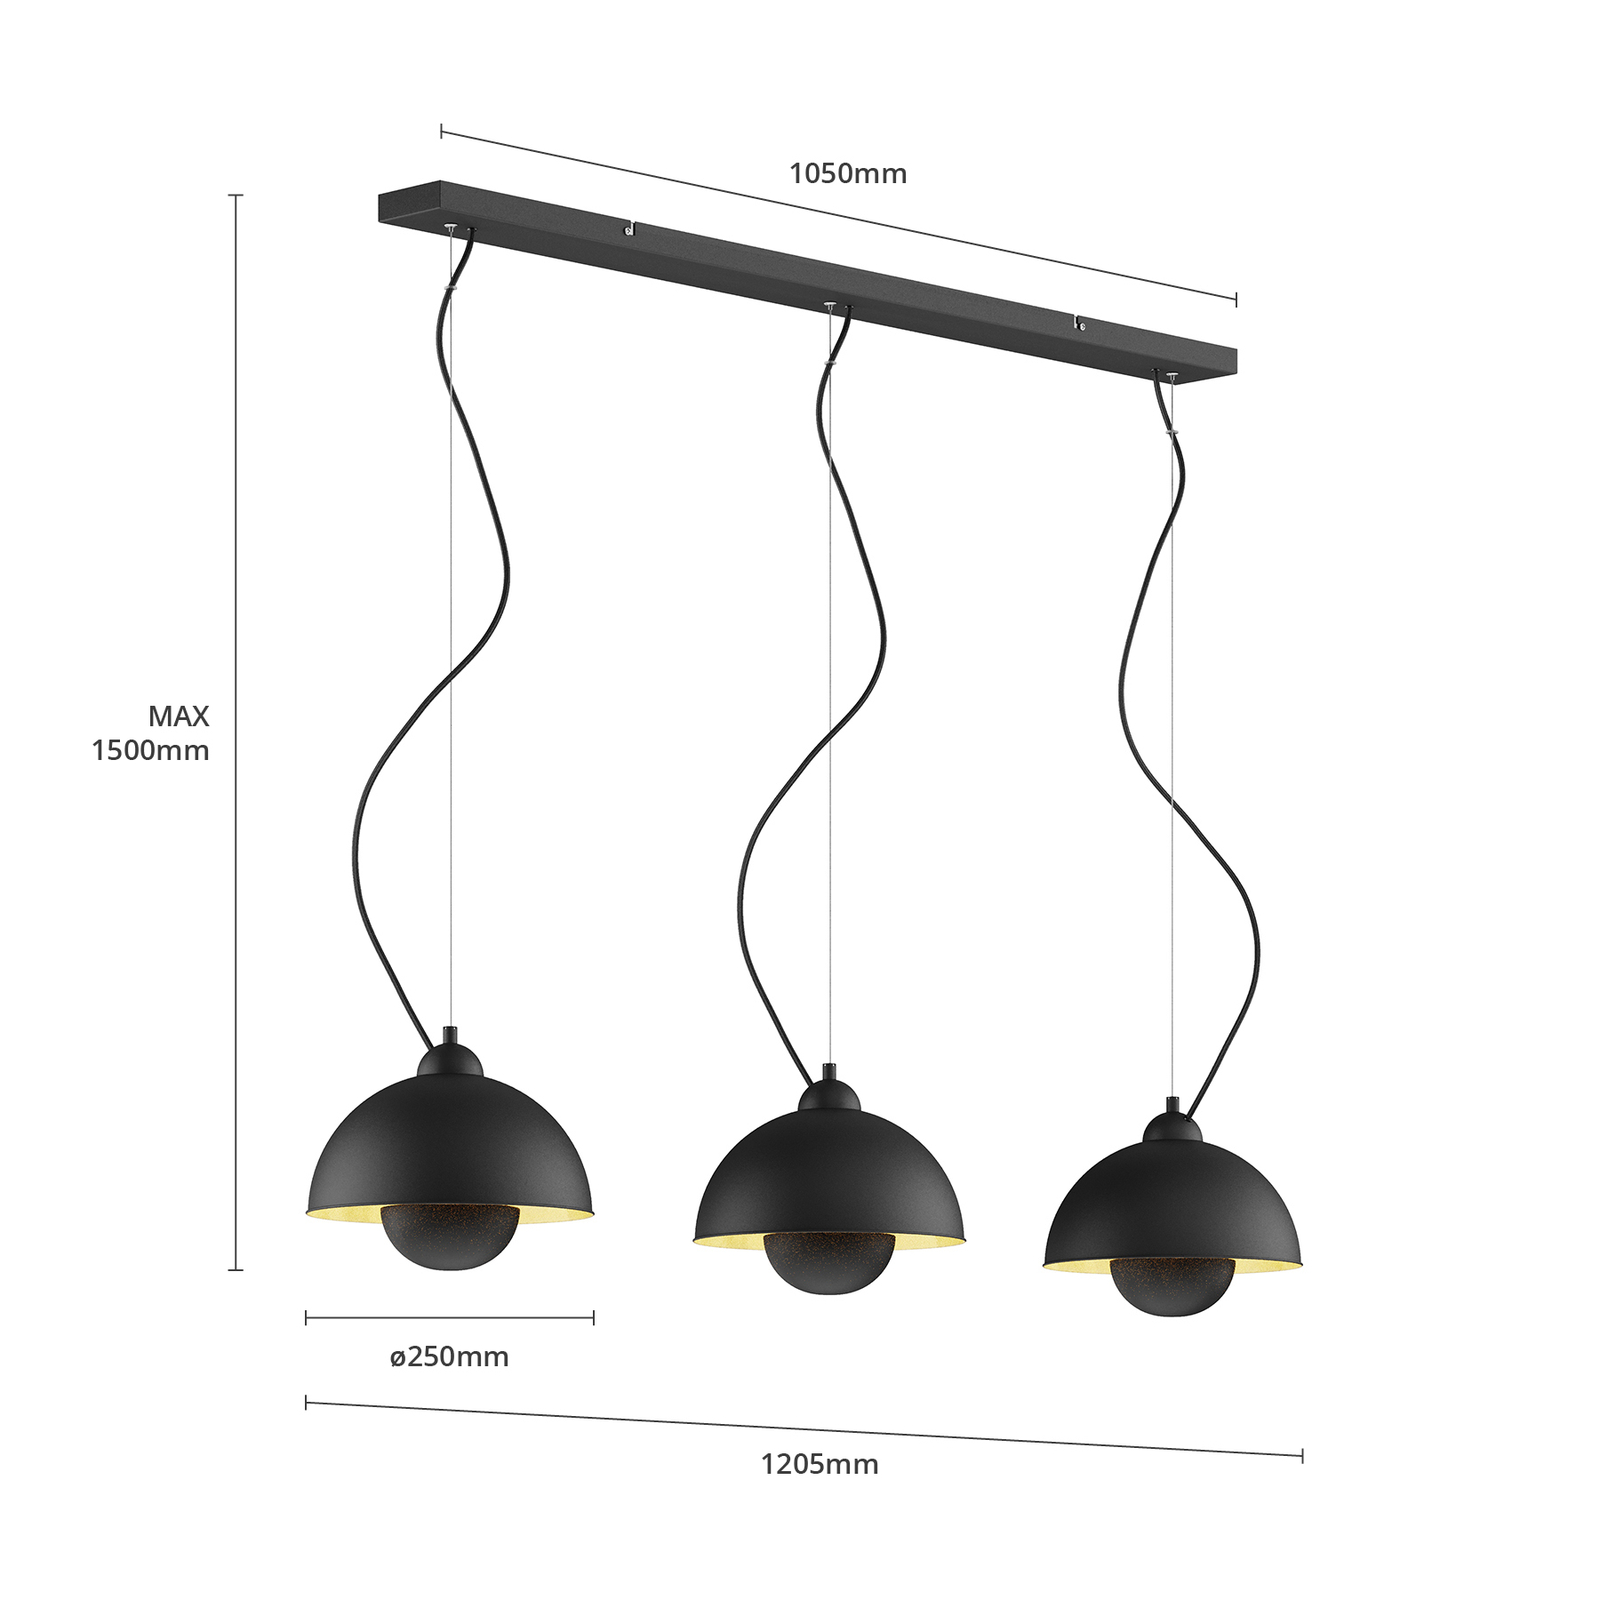 Hanglamp Gretja met drie lampjes, zwart-goud